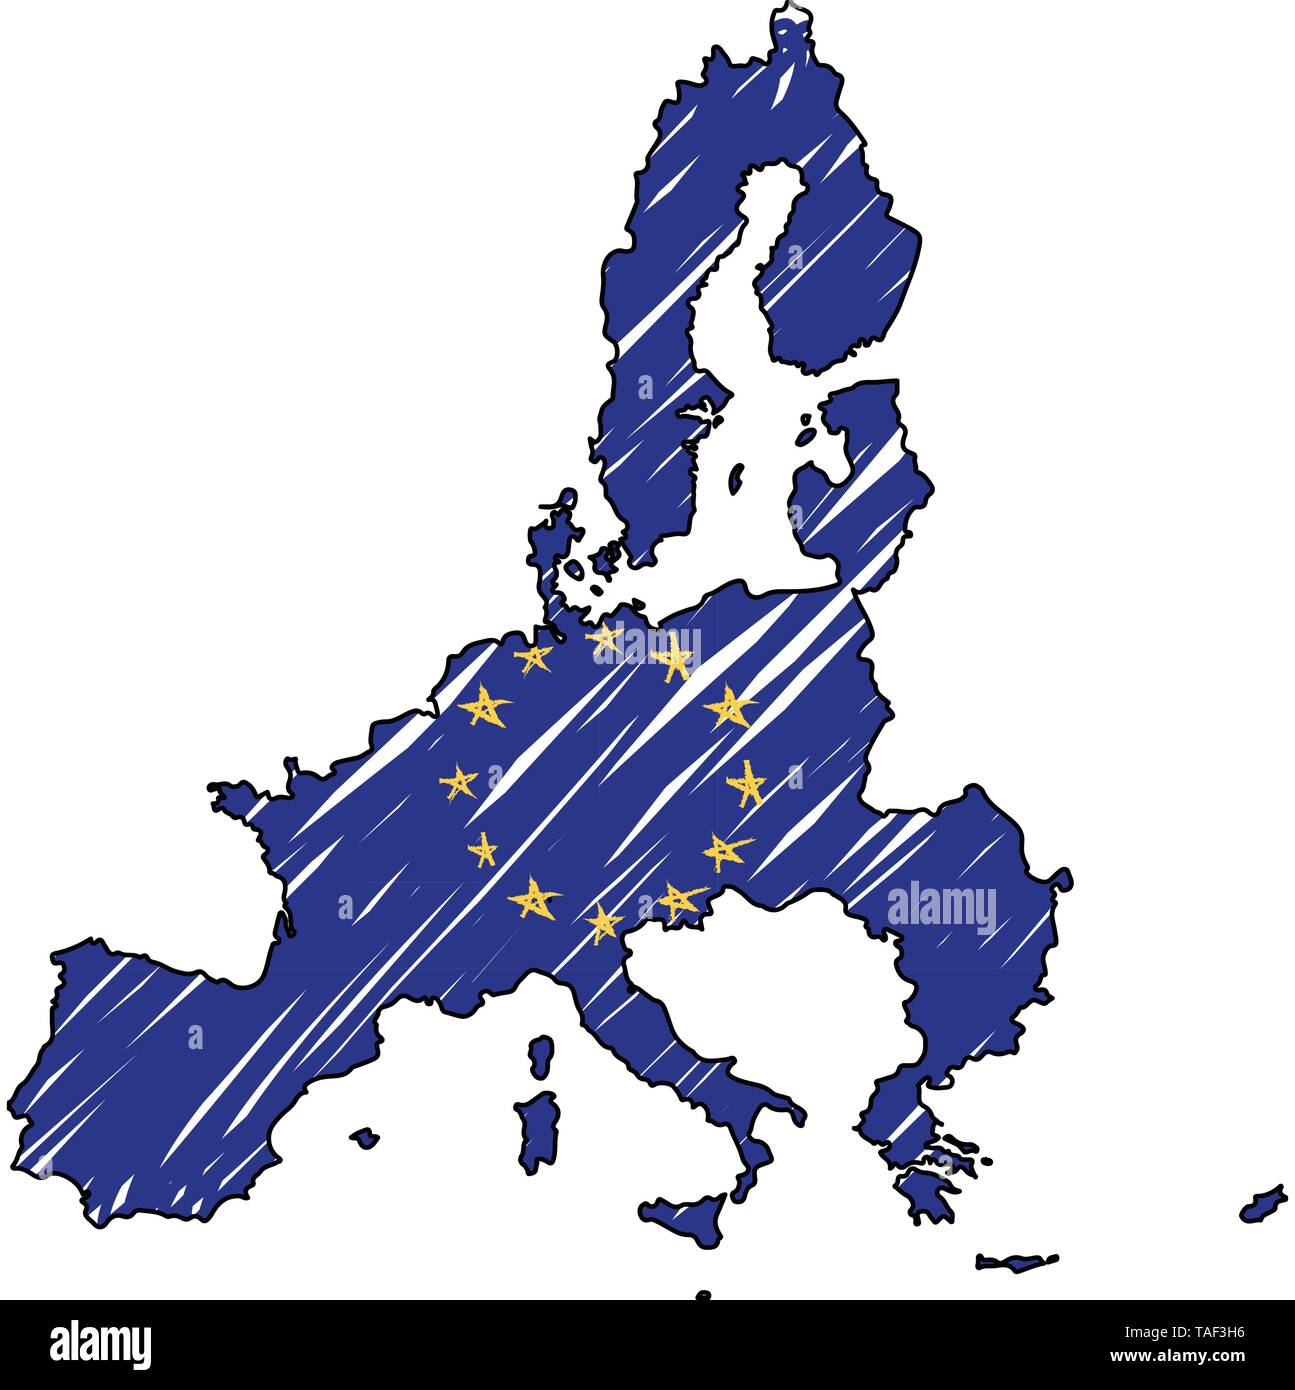 Dibujando mapa de Europa con sus banderas 